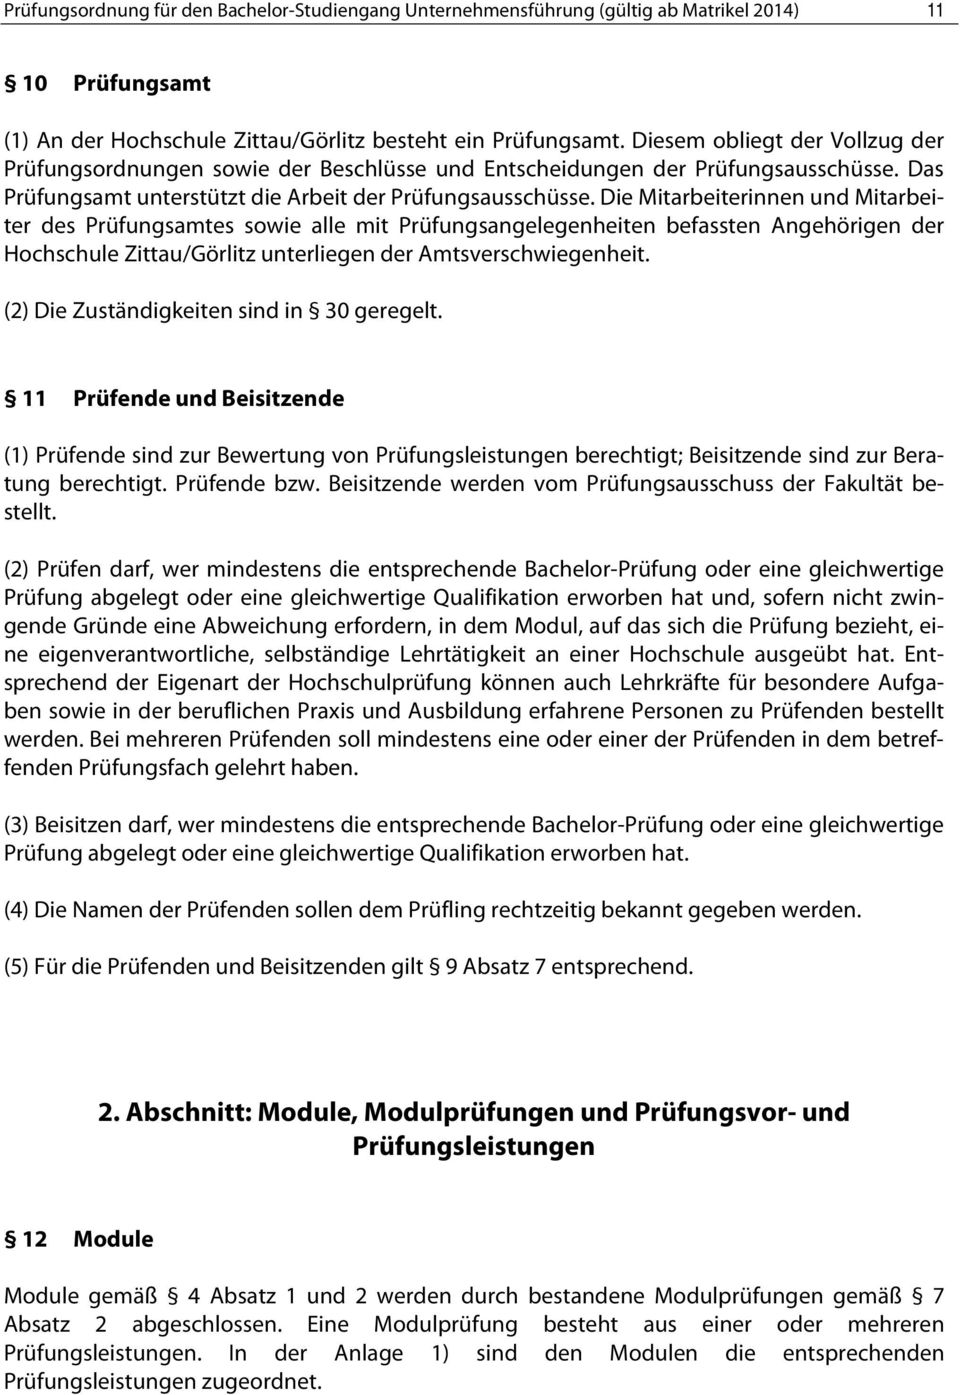 Die Mitarbeiterinnen und Mitarbeiter des Prüfungsamtes sowie alle mit Prüfungsangelegenheiten befassten Angehörigen der Hochschule Zittau/Görlitz unterliegen der Amtsverschwiegenheit.